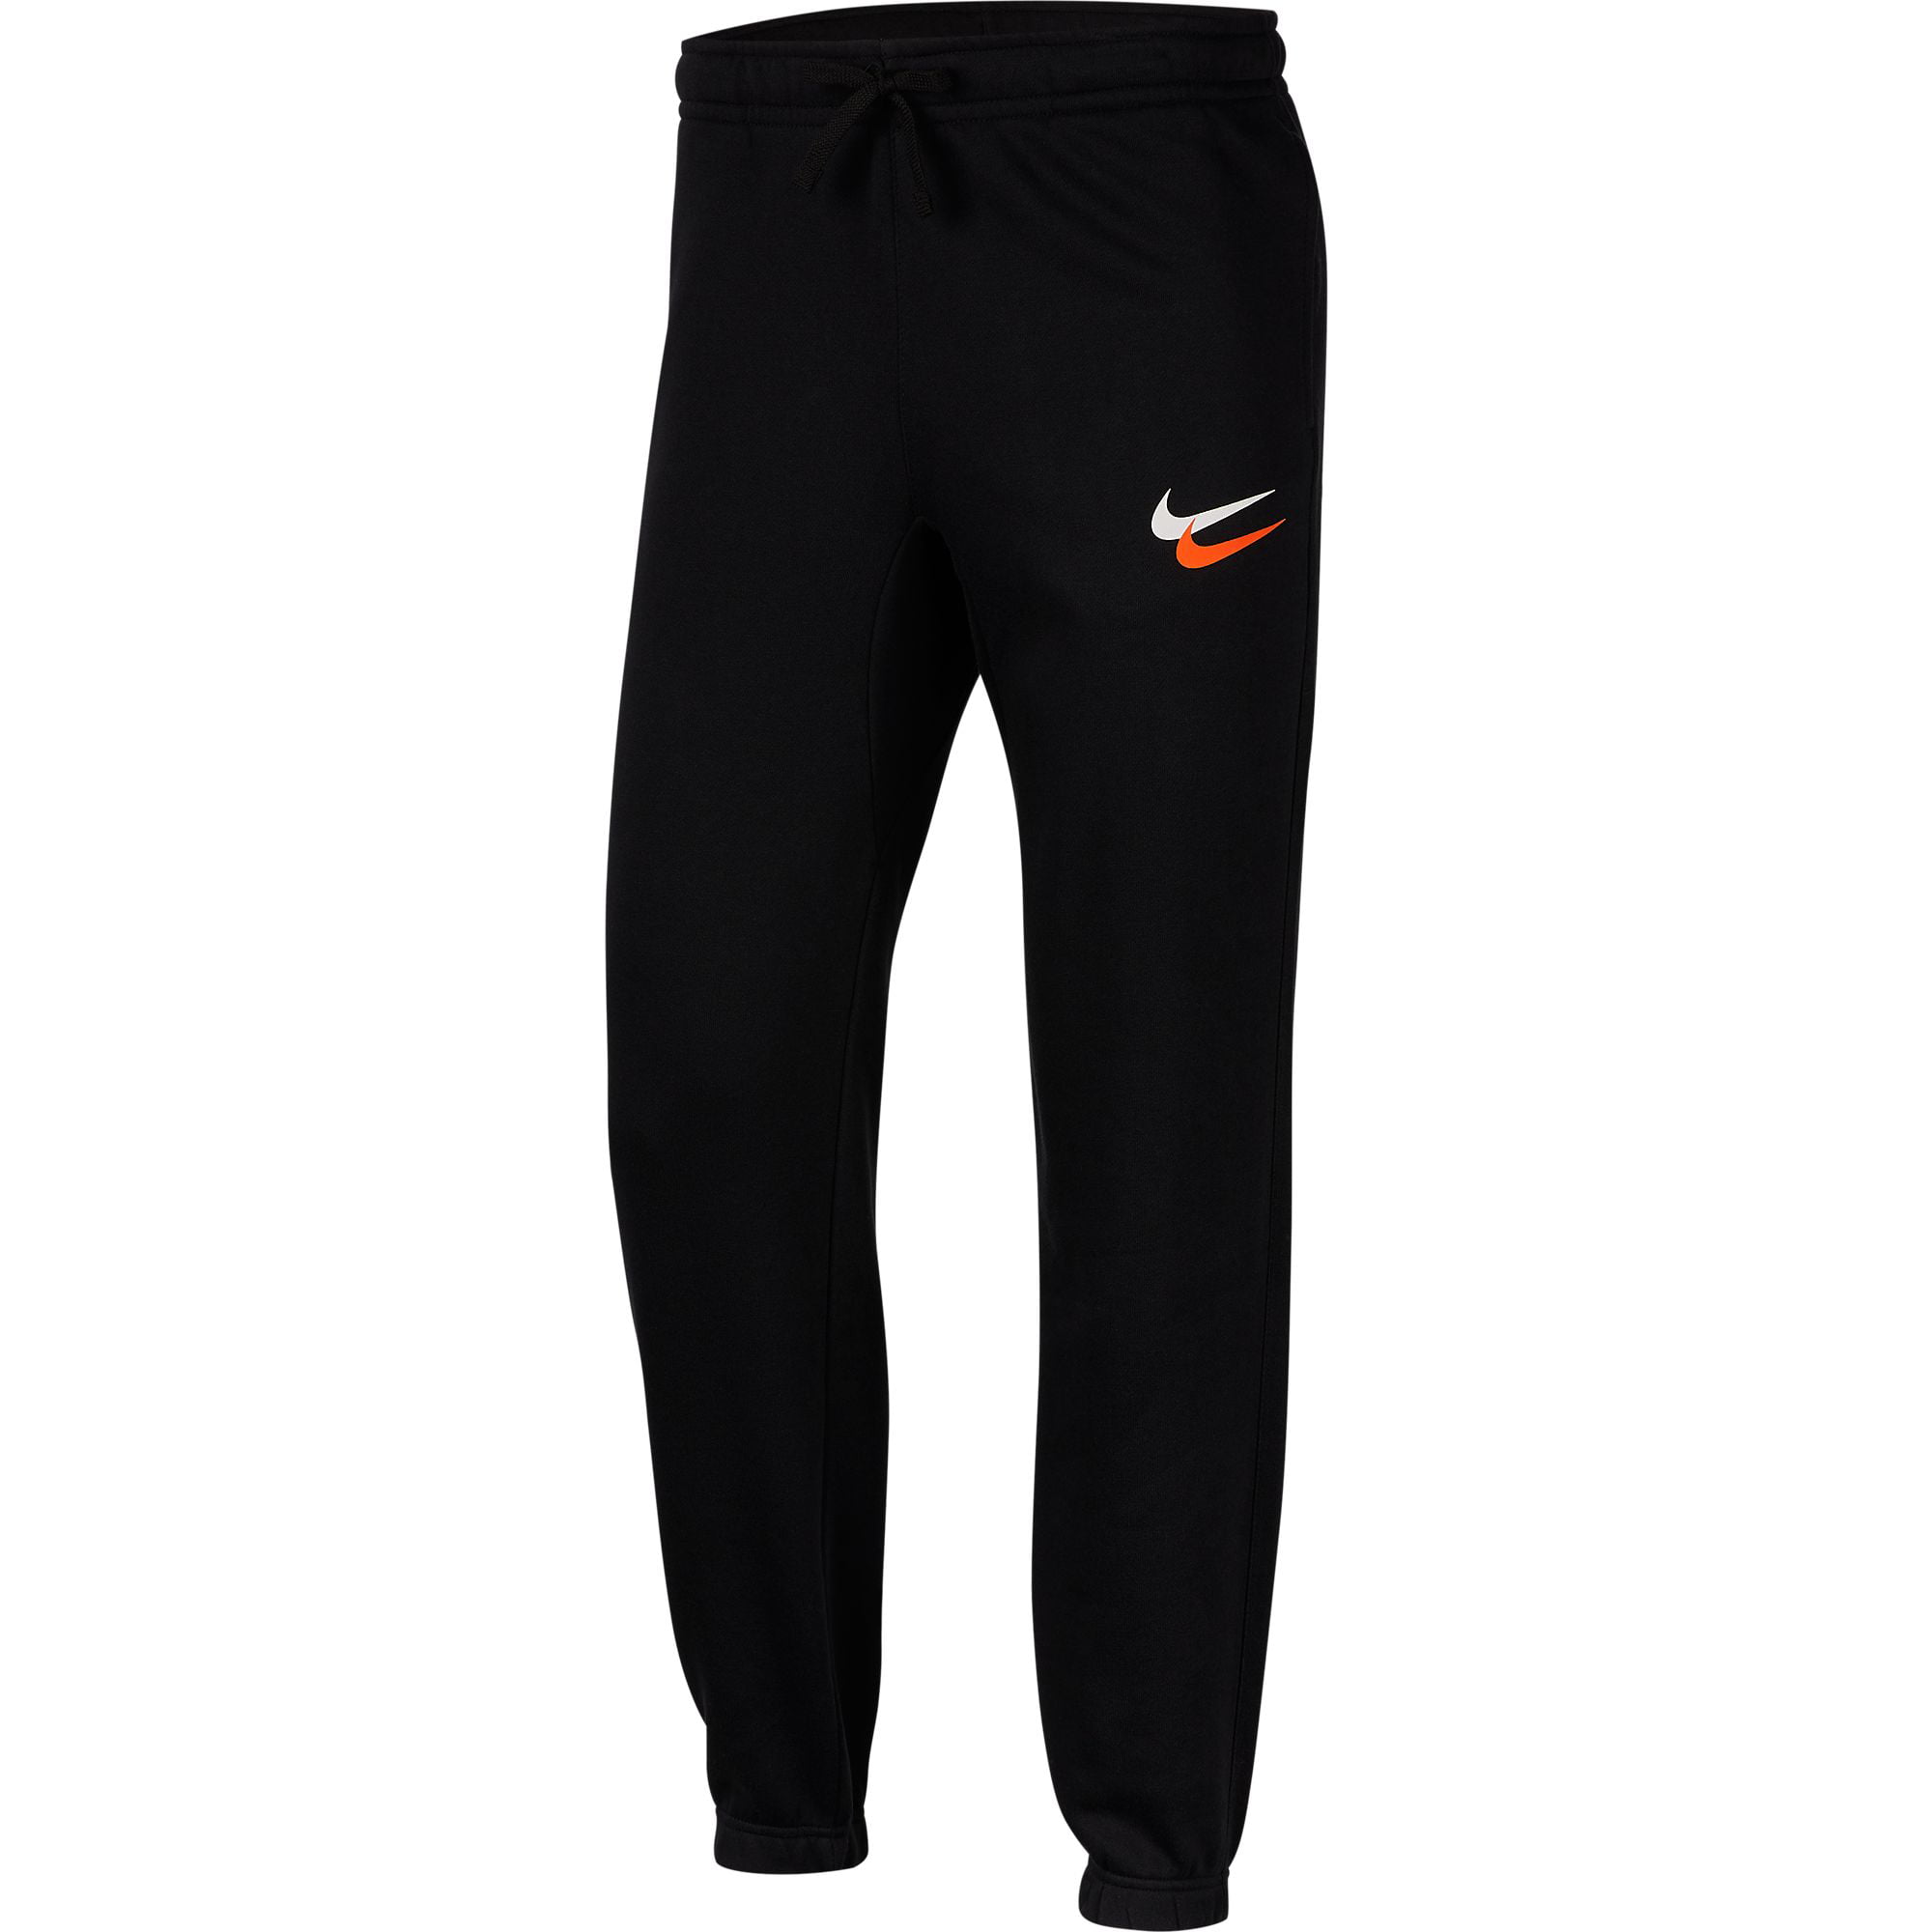 Nike Men's "City Brights" Club Jogger Pants Black ci3321-011 - Walmart.com